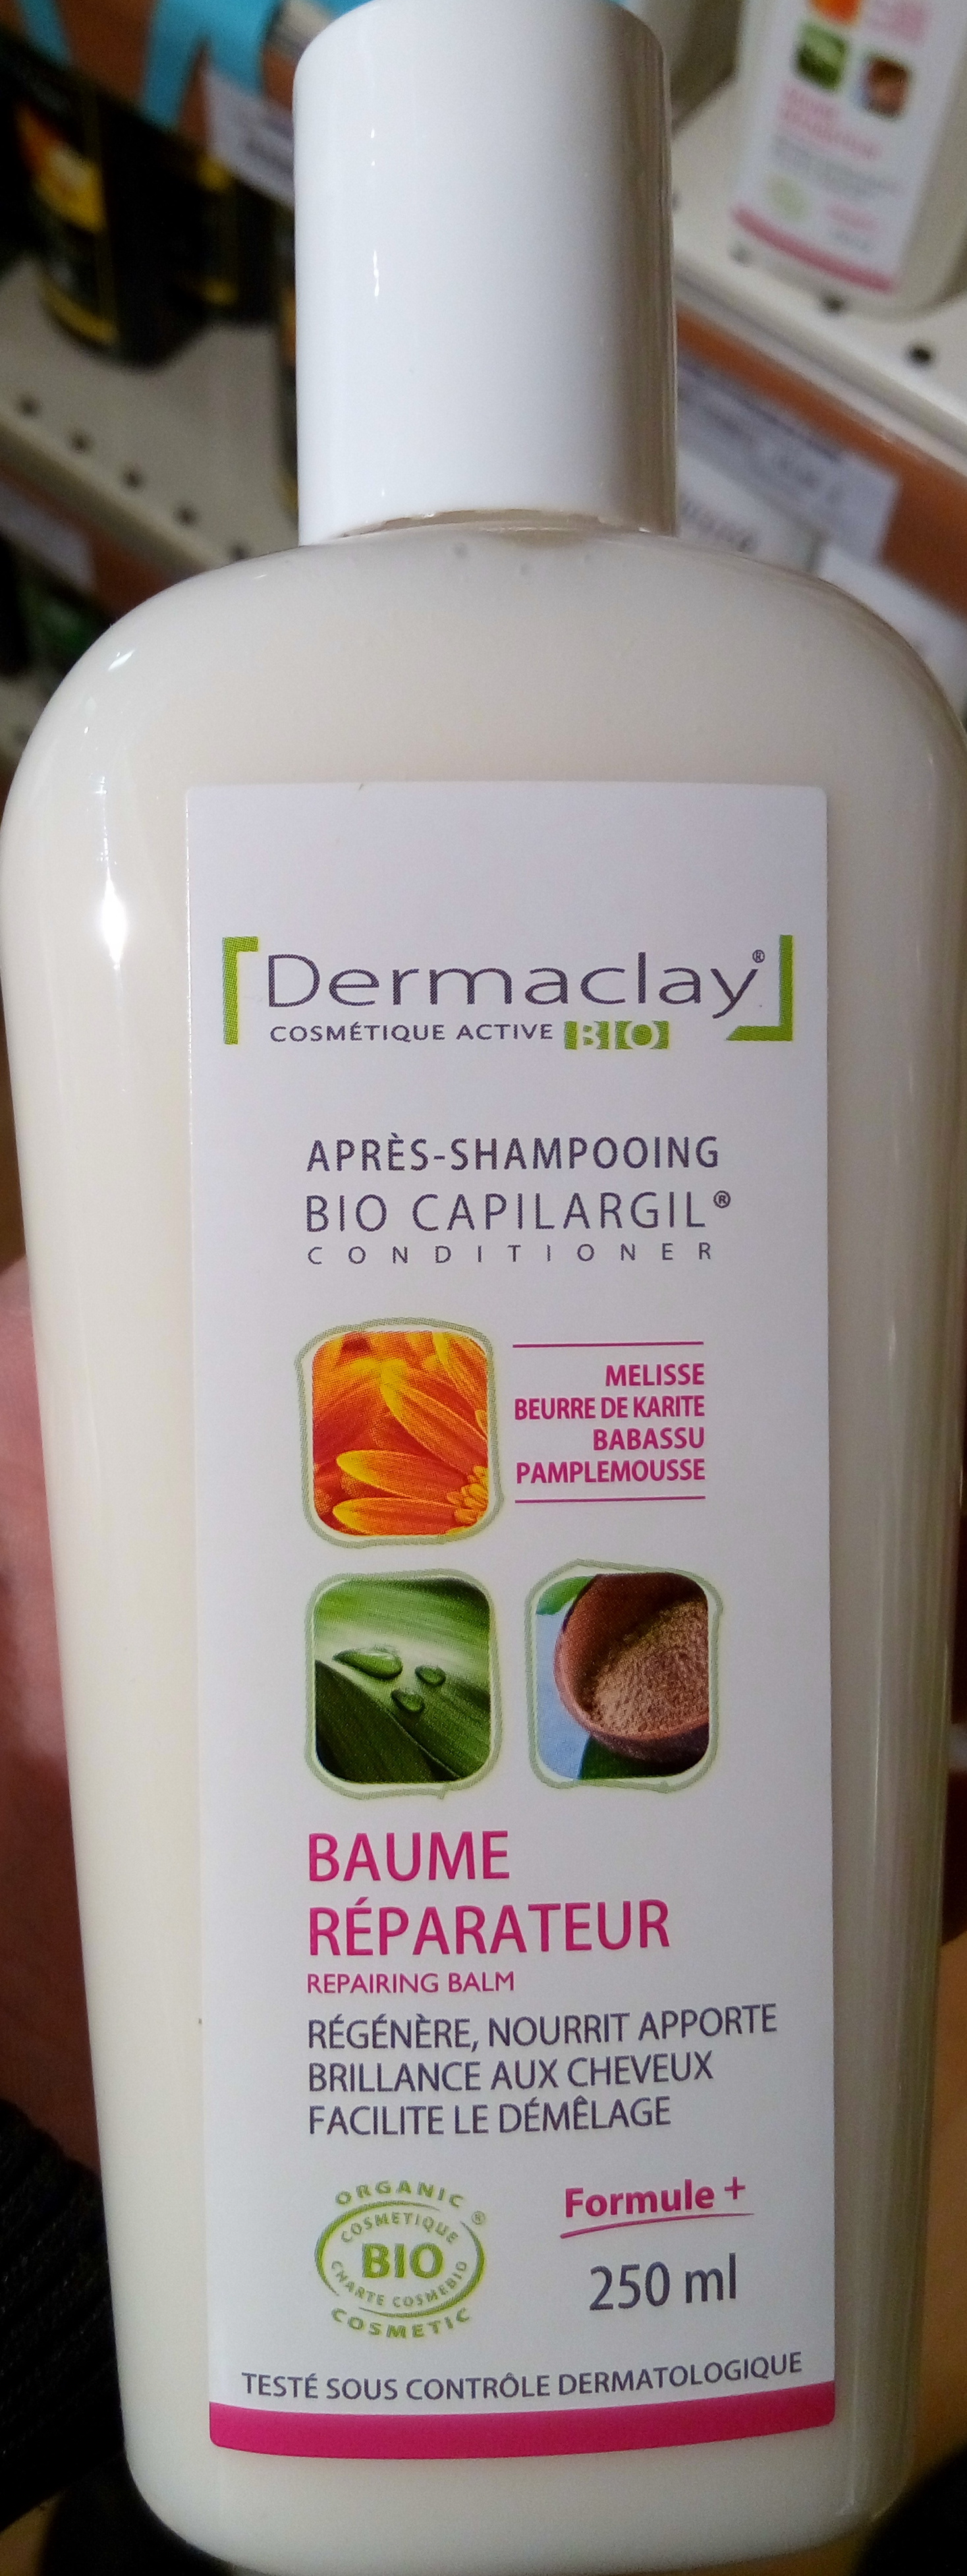 Bio Capilargil Après-shampooing Baume réparateur Mélisse Beurre de karité Babassu Pamplemousse - Product - fr